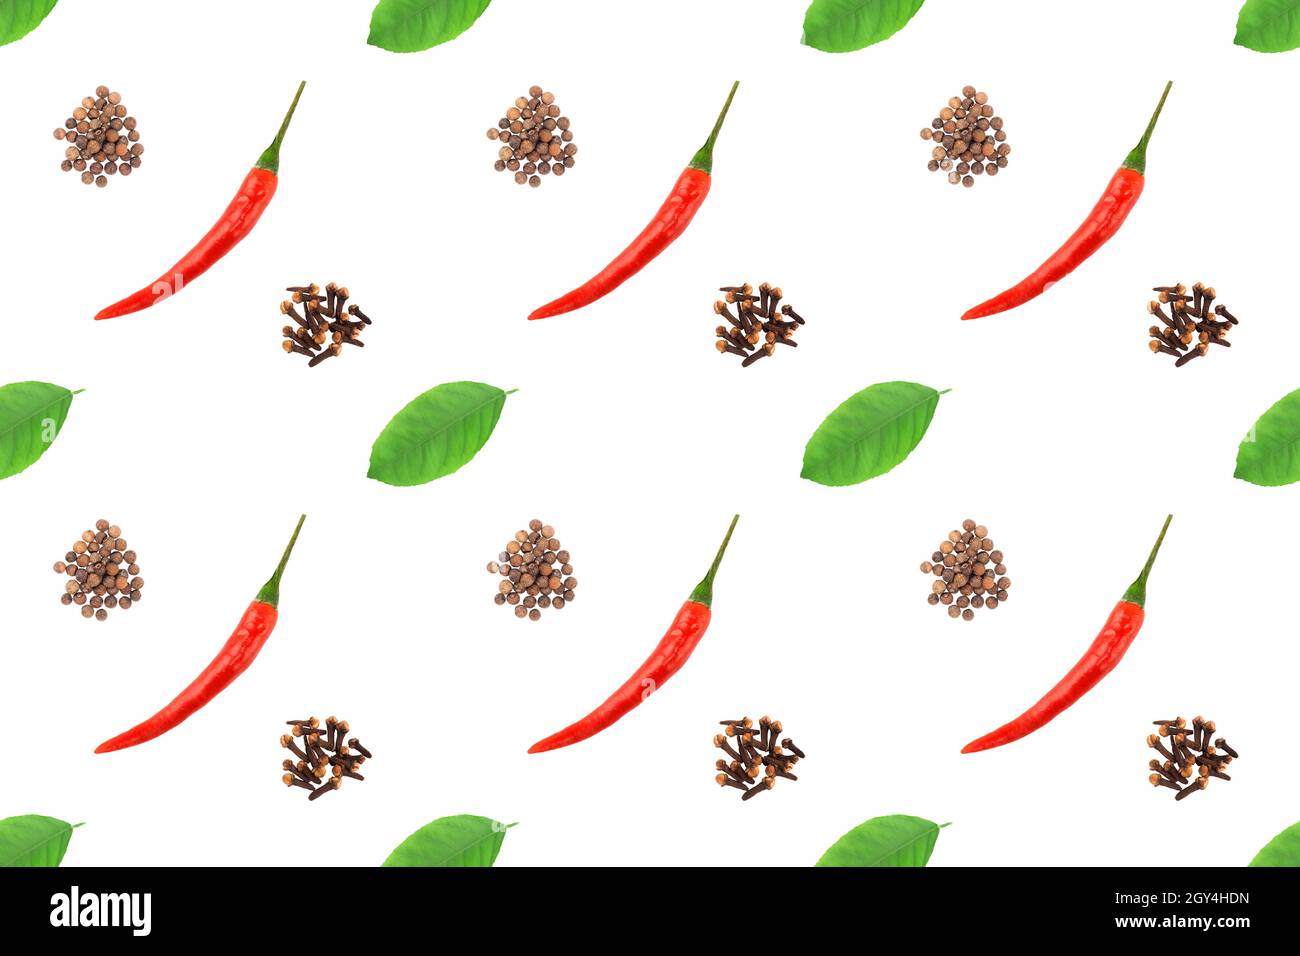 Motif épicé sans couture avec des gousses de piment rouge, des tas de clous de girofle, des feuilles vertes sur fond blanc.Concept de cuisine délicieuse Banque D'Images